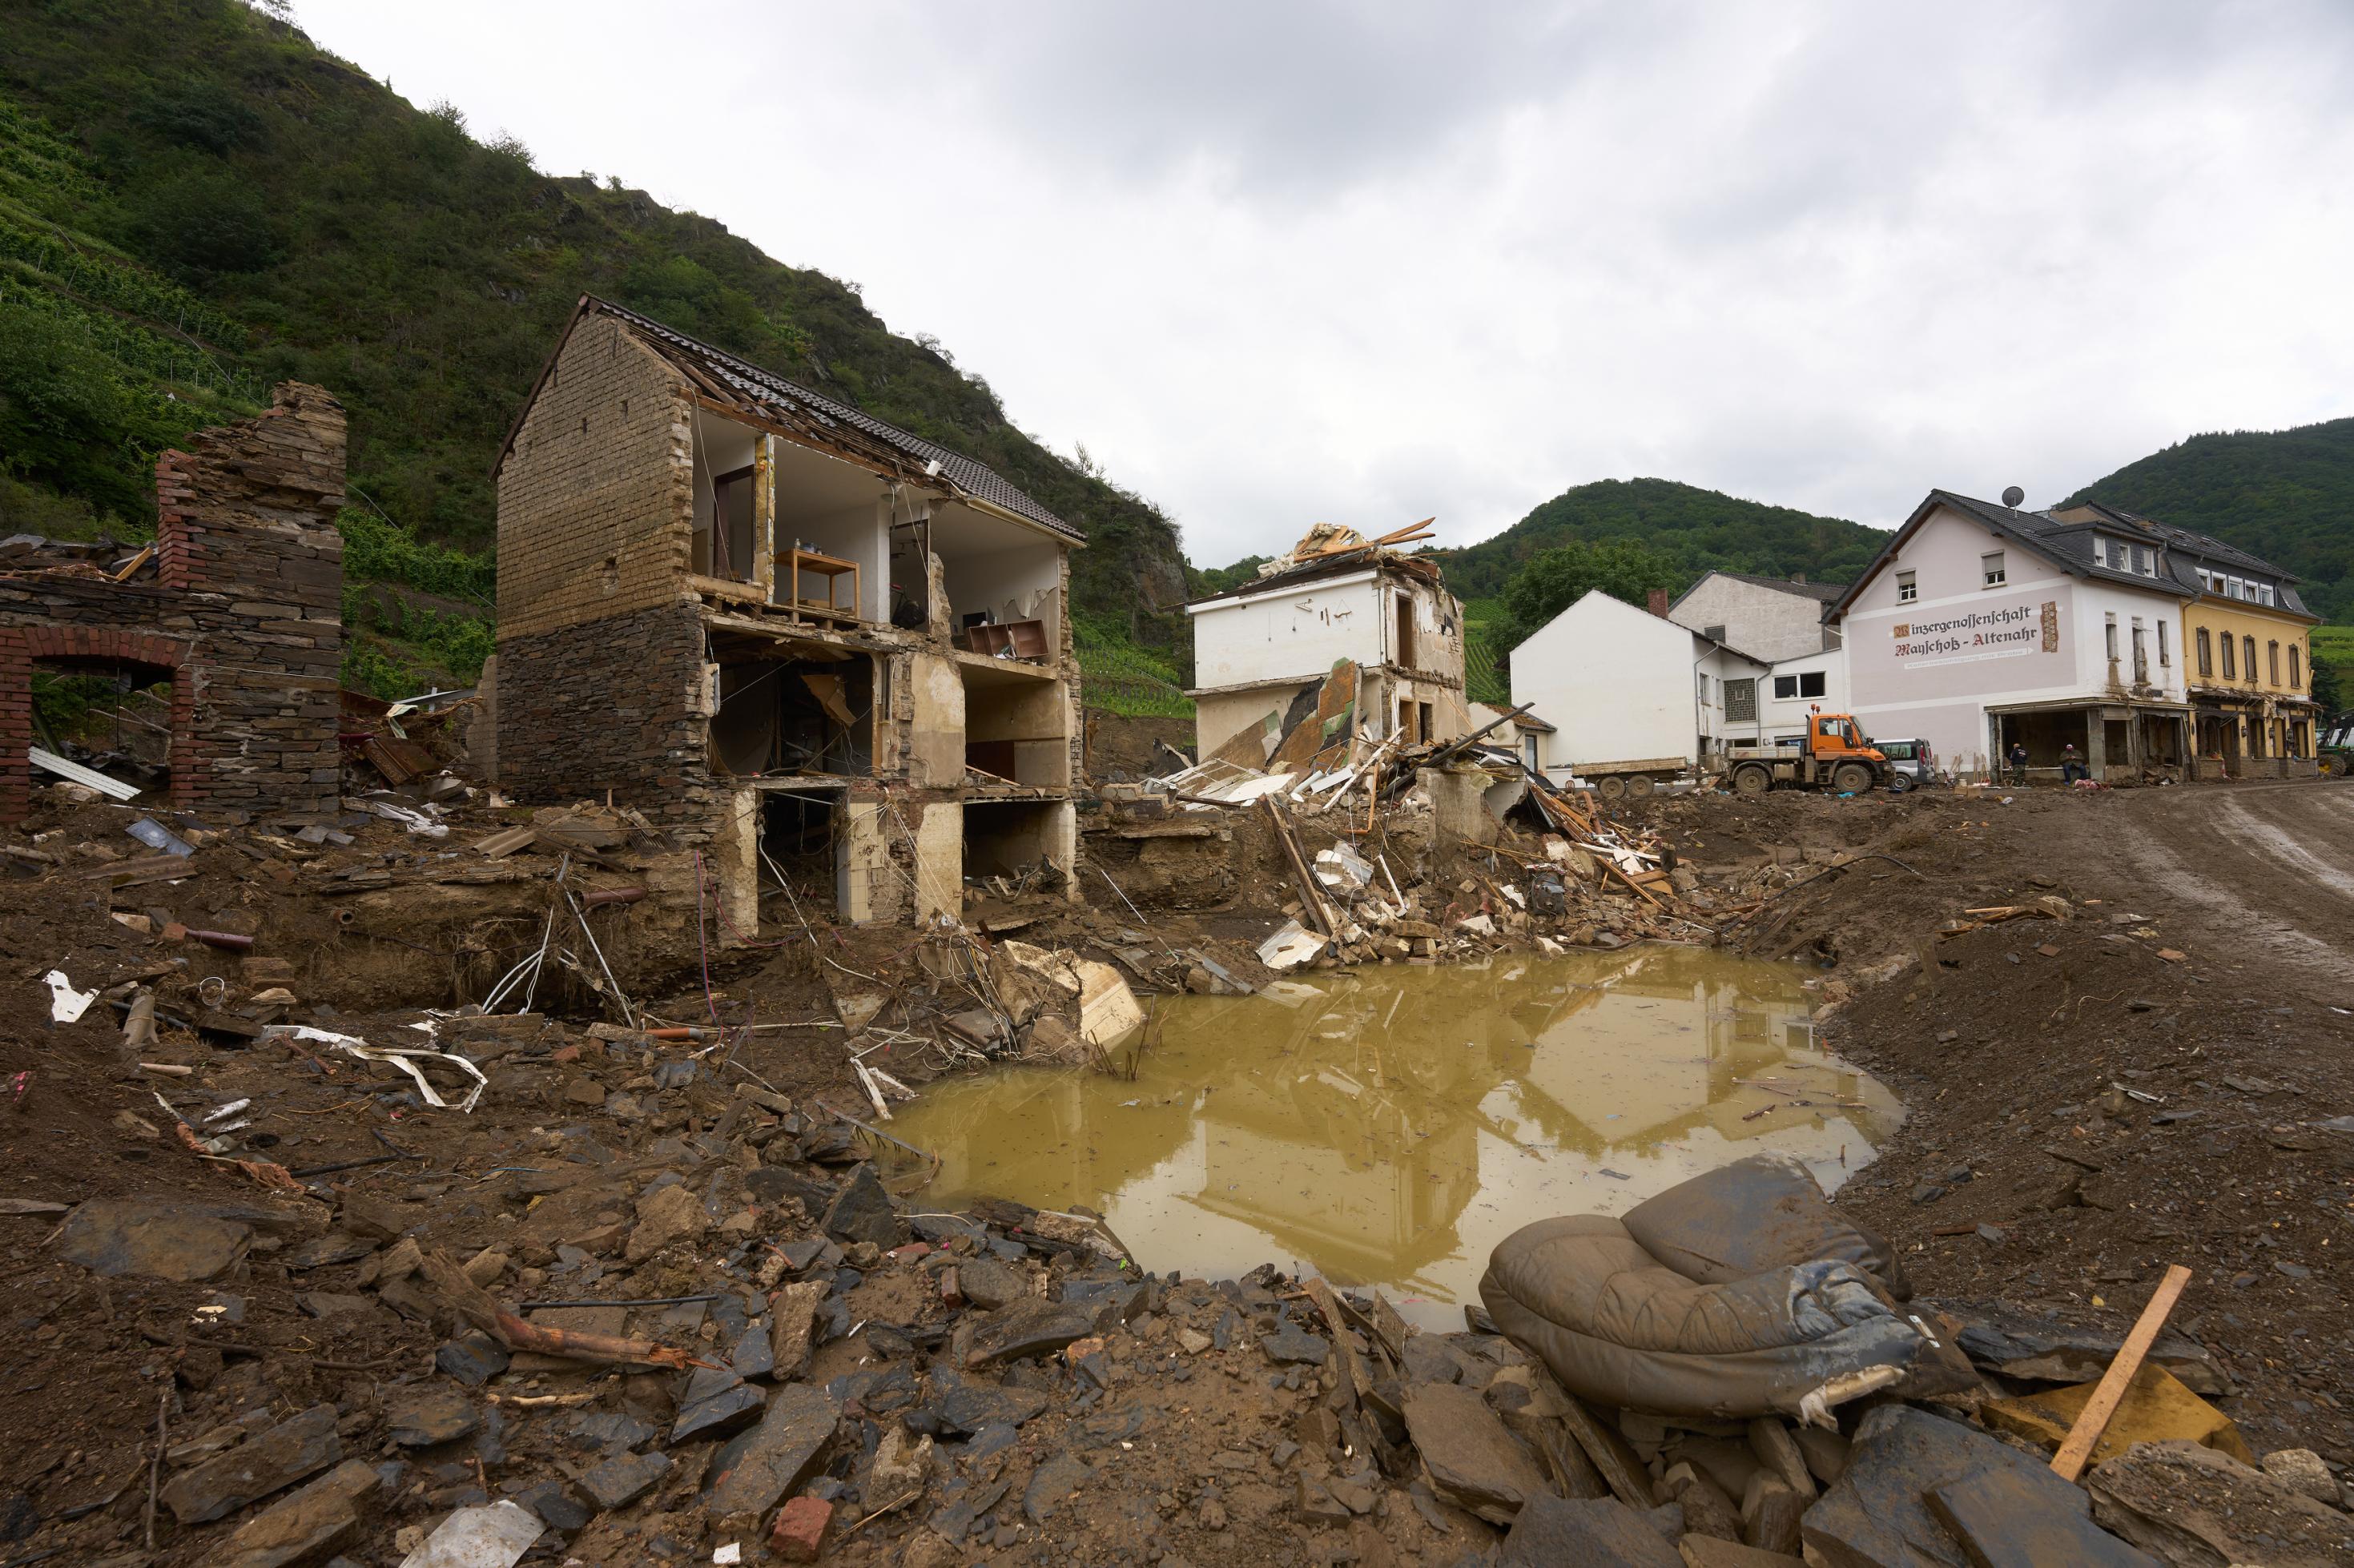 Haus, dessen Vorderfront vom Hochwassers zerstört wurde, im Vordergrund eine kraterförmige Pfutze, gefüllt mit Wasser